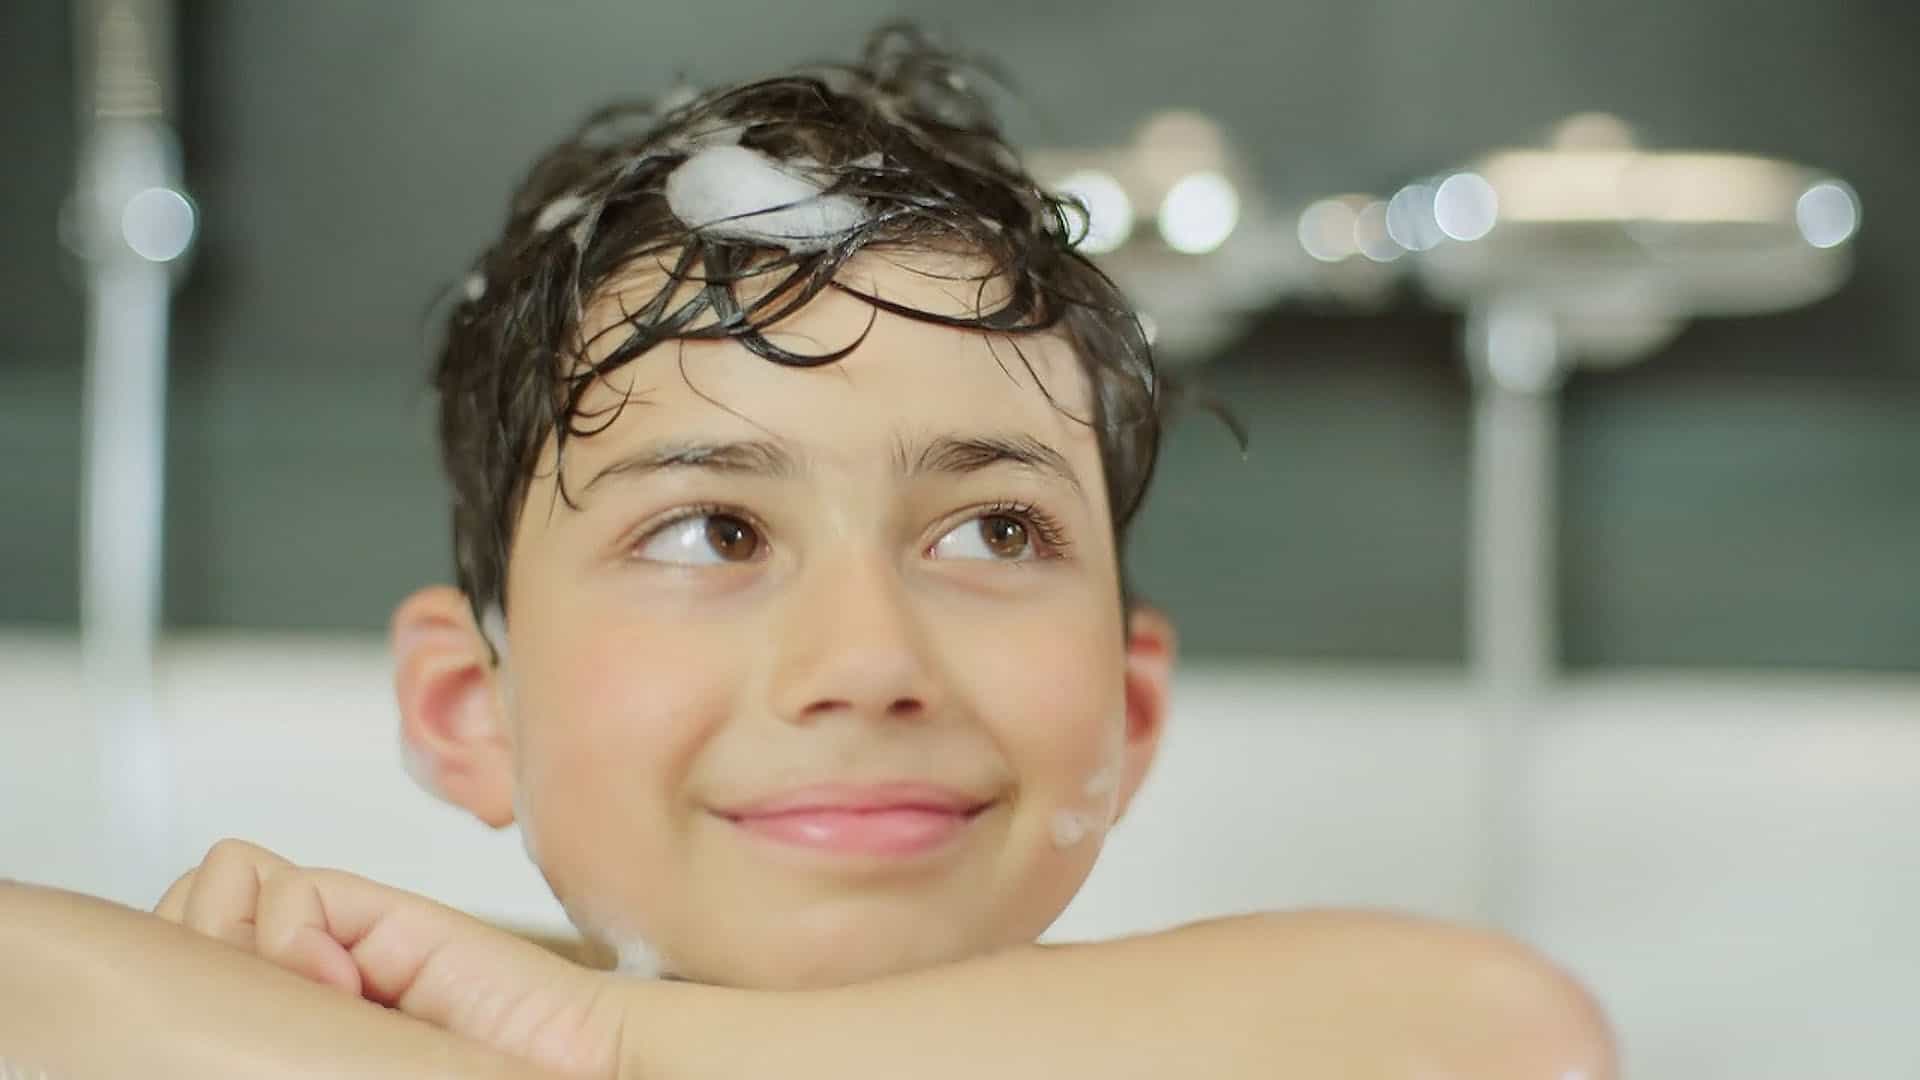 Ein glückliches Kind in der Badewanne mit shampoonierten Haare.